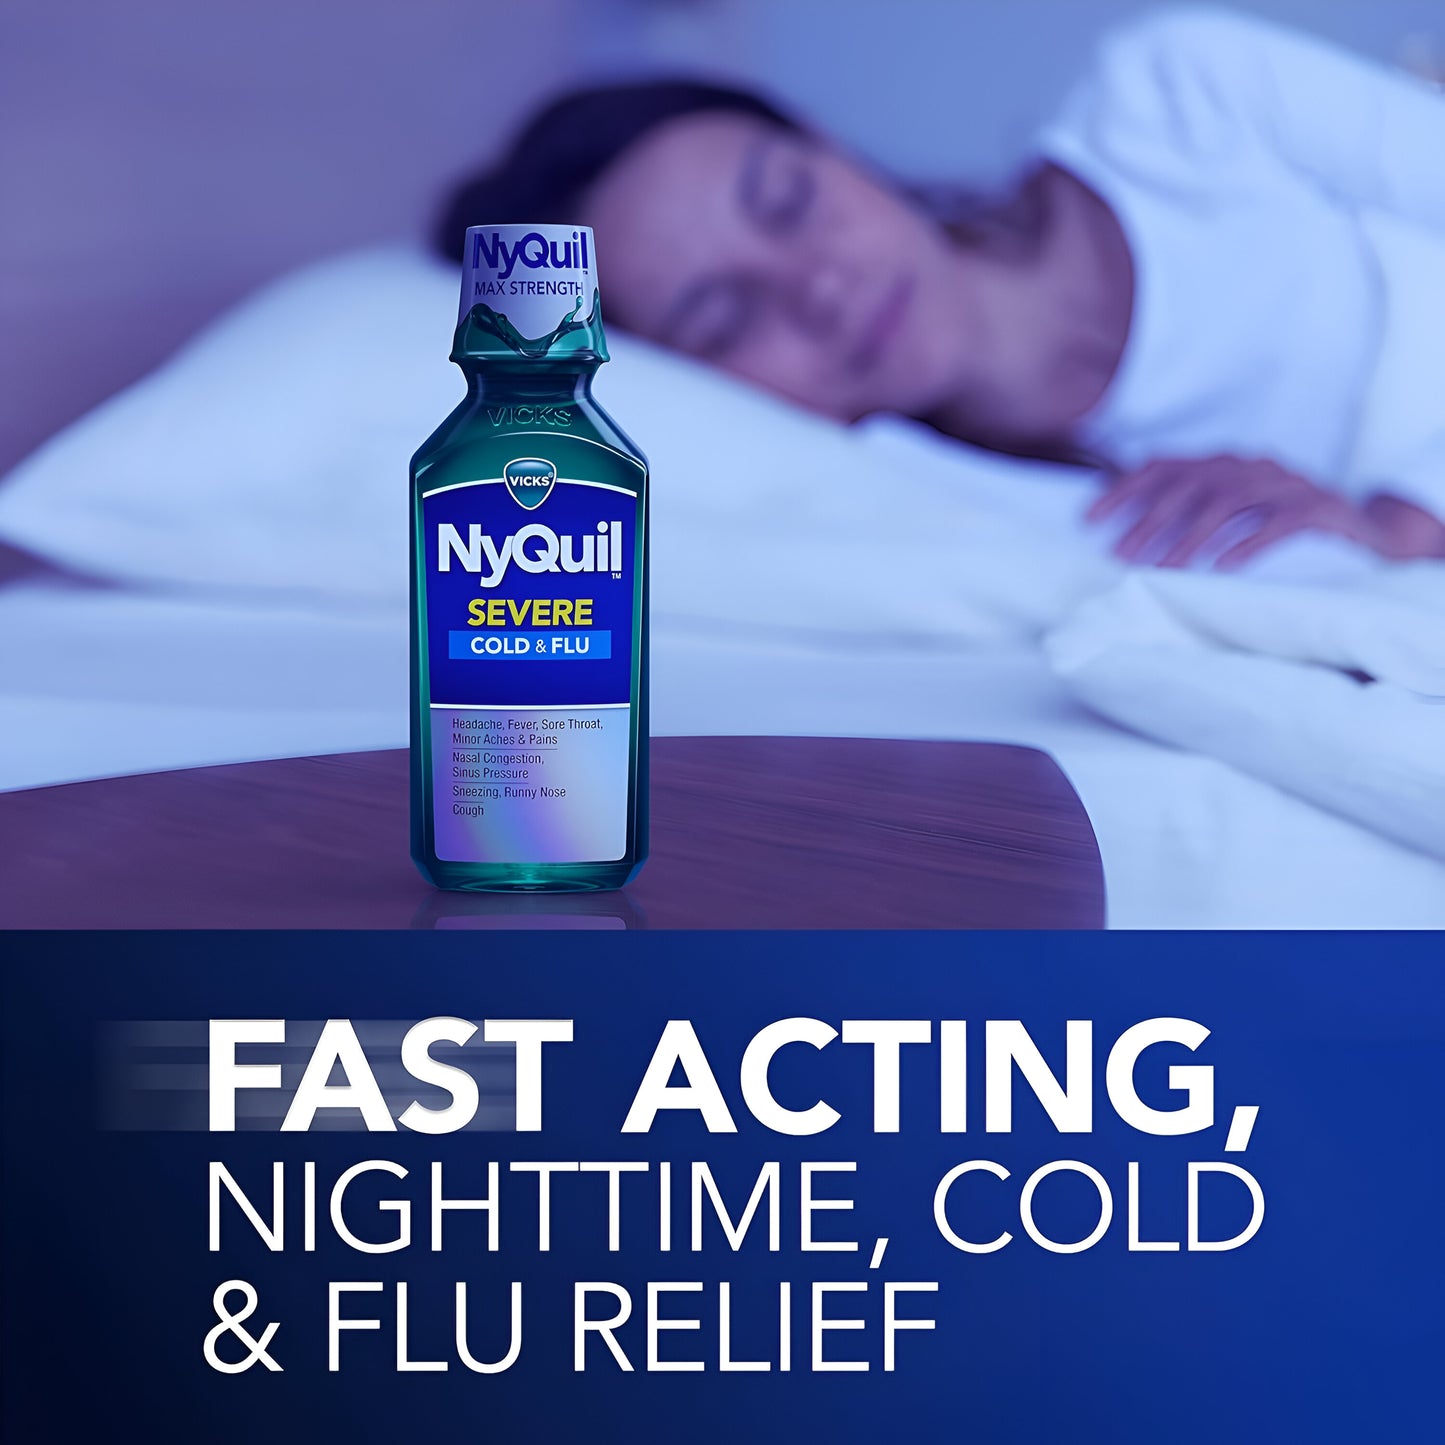 Vicks NyQuil jarabe para el alivio nocturno de la tos y la gripe SEVERE, 354ml